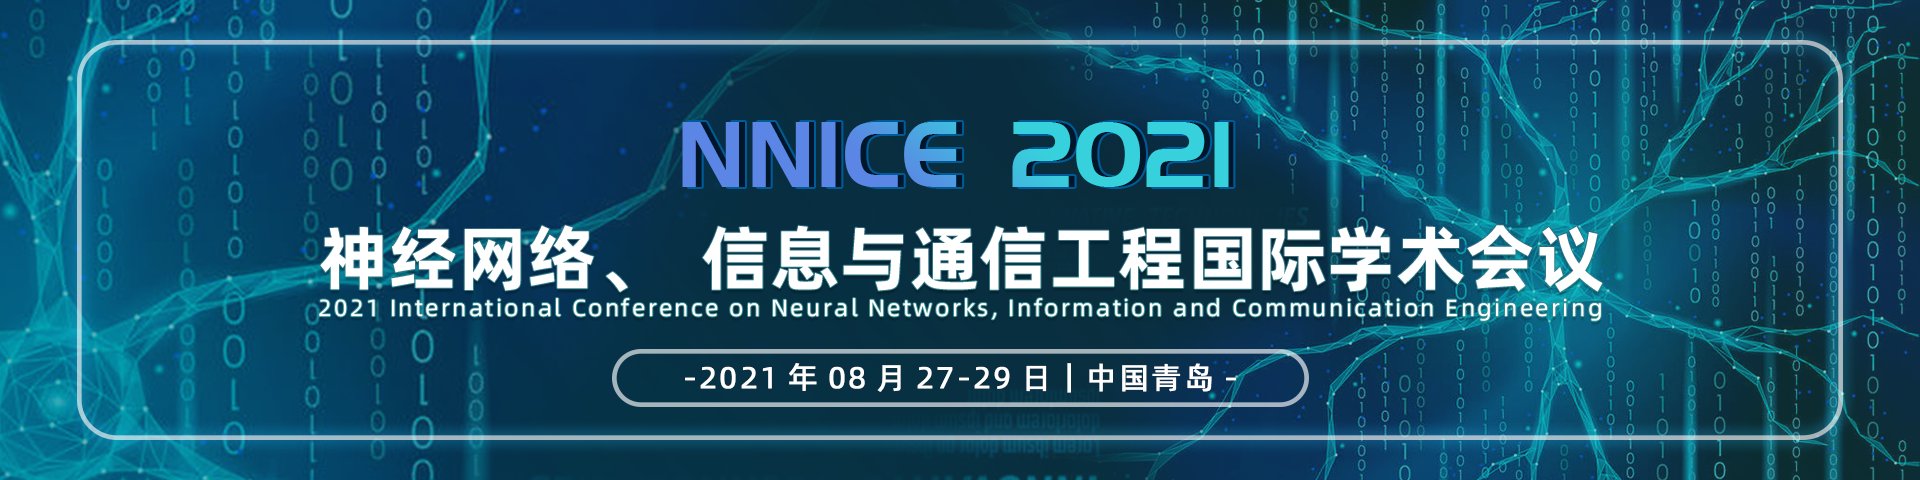 2021神经网络、信息与通信工程国际学术会议（NNICE  2021）